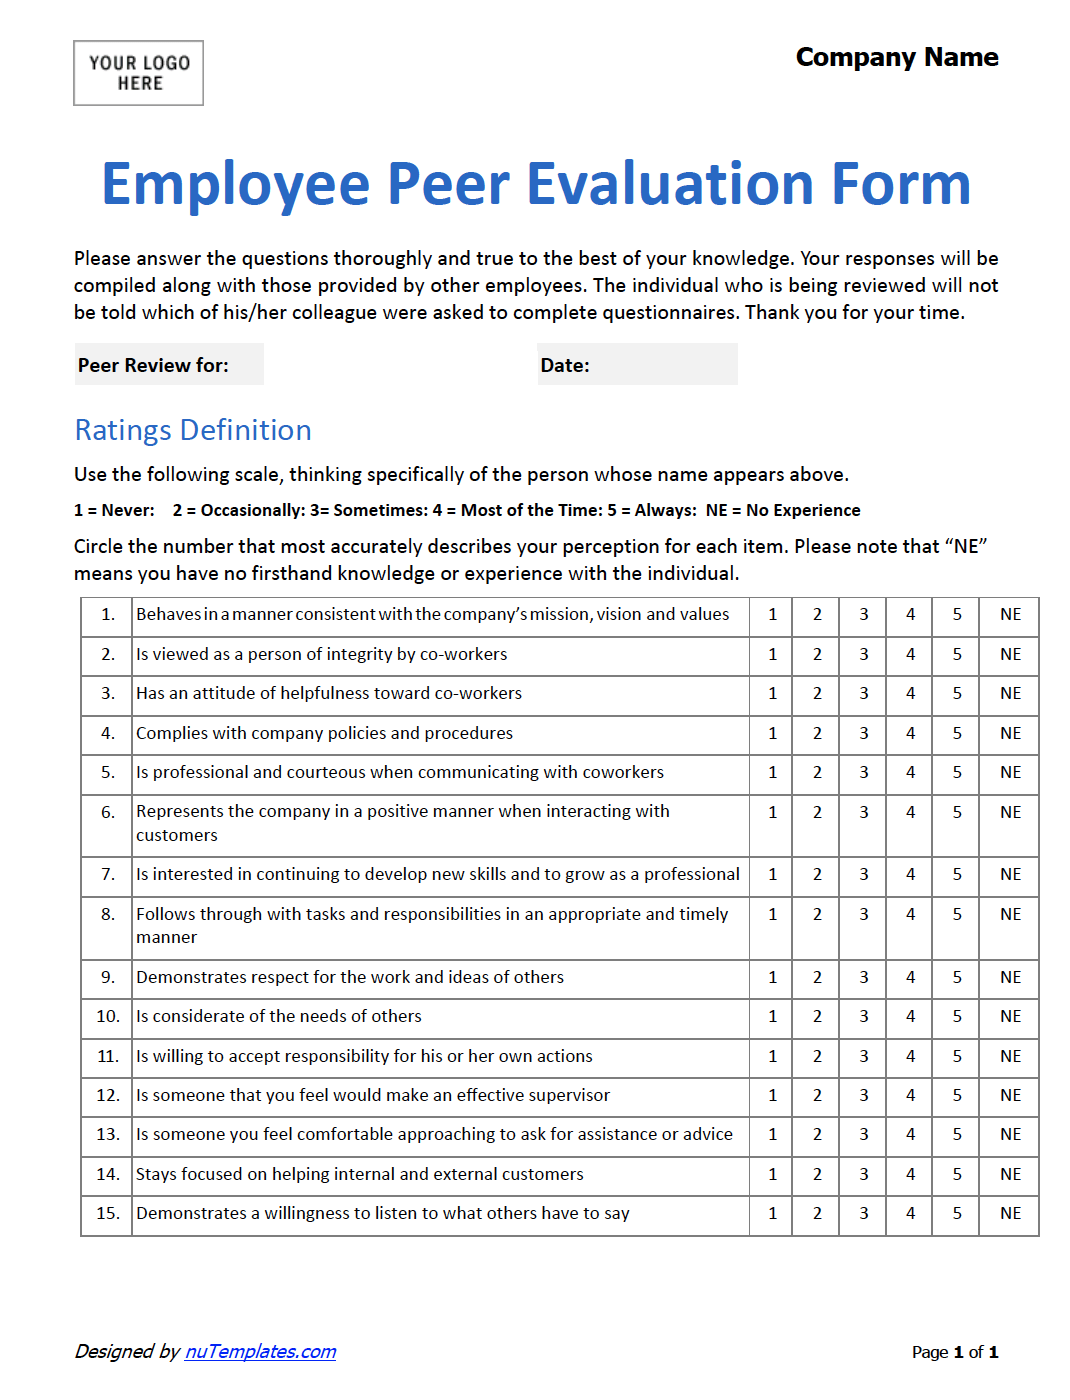 Employee-Peer-Evaluation-Form-jpg